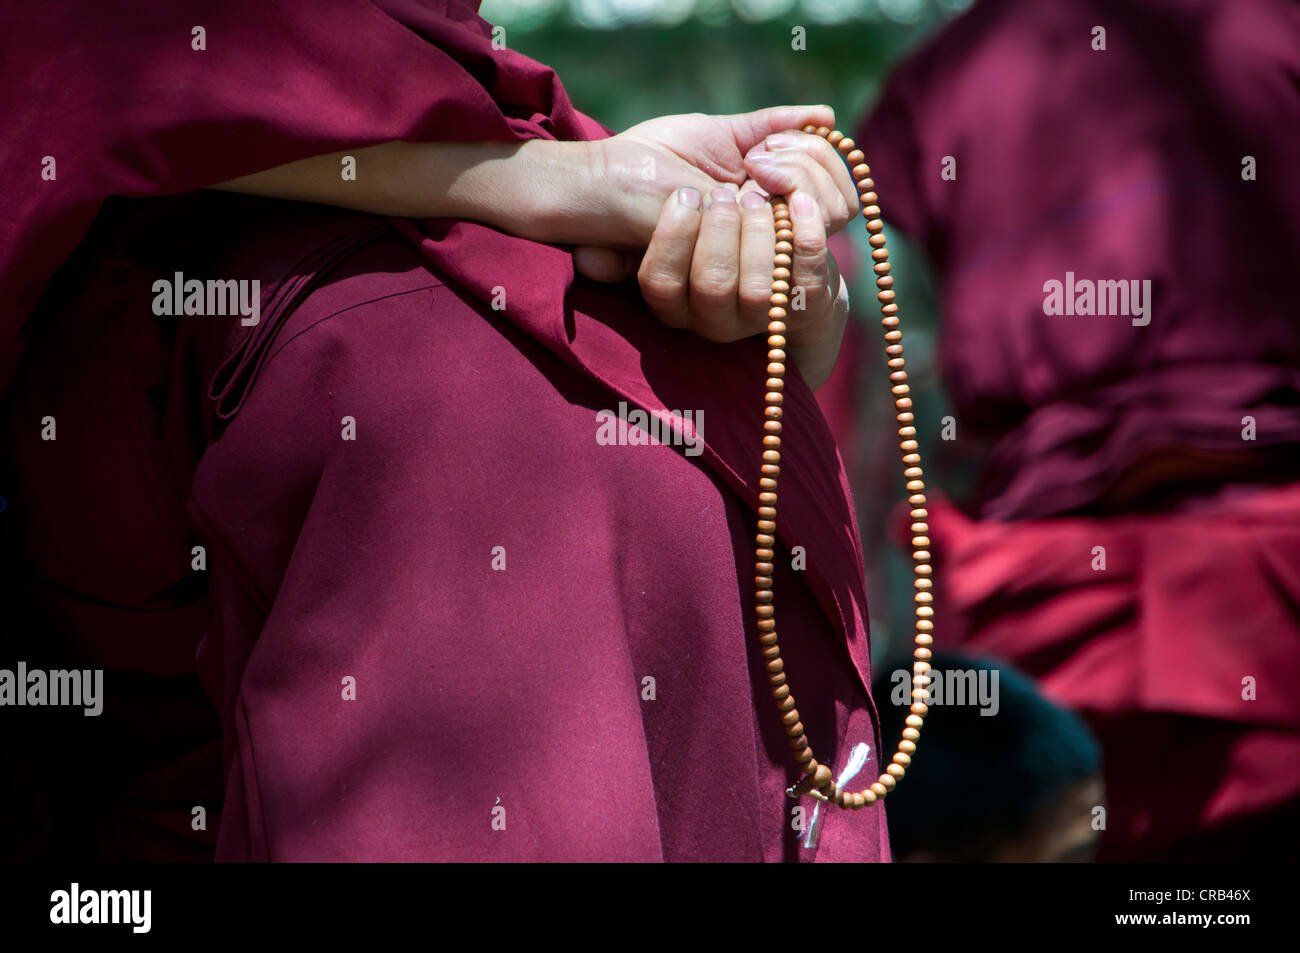 Junge Mönche während ihrer täglichen Diskussion Runde in Saga Tempel, Lhasa, Tibet, Asien Stockfoto